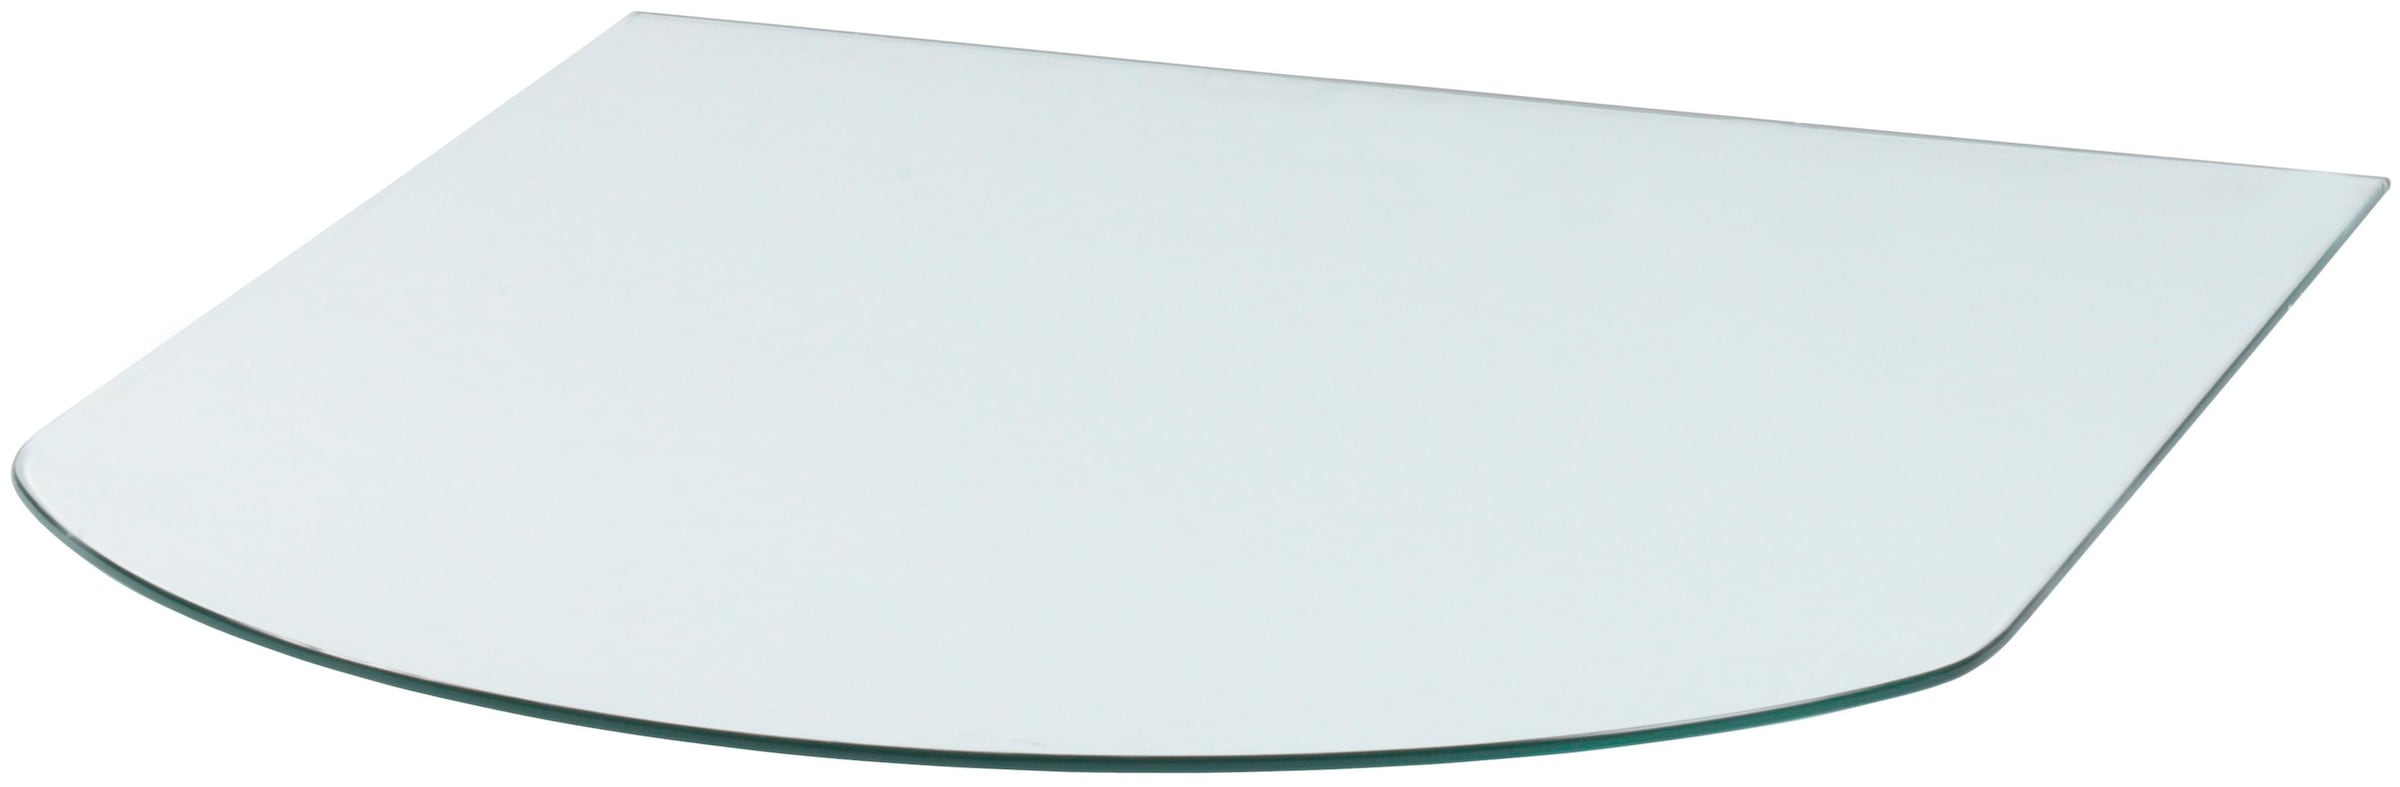 Heathus Bodenschutzplatte, Glas-Halbrund, 85 x 110 cm, 8mm Stärke, transparent, zum Funkenschutz